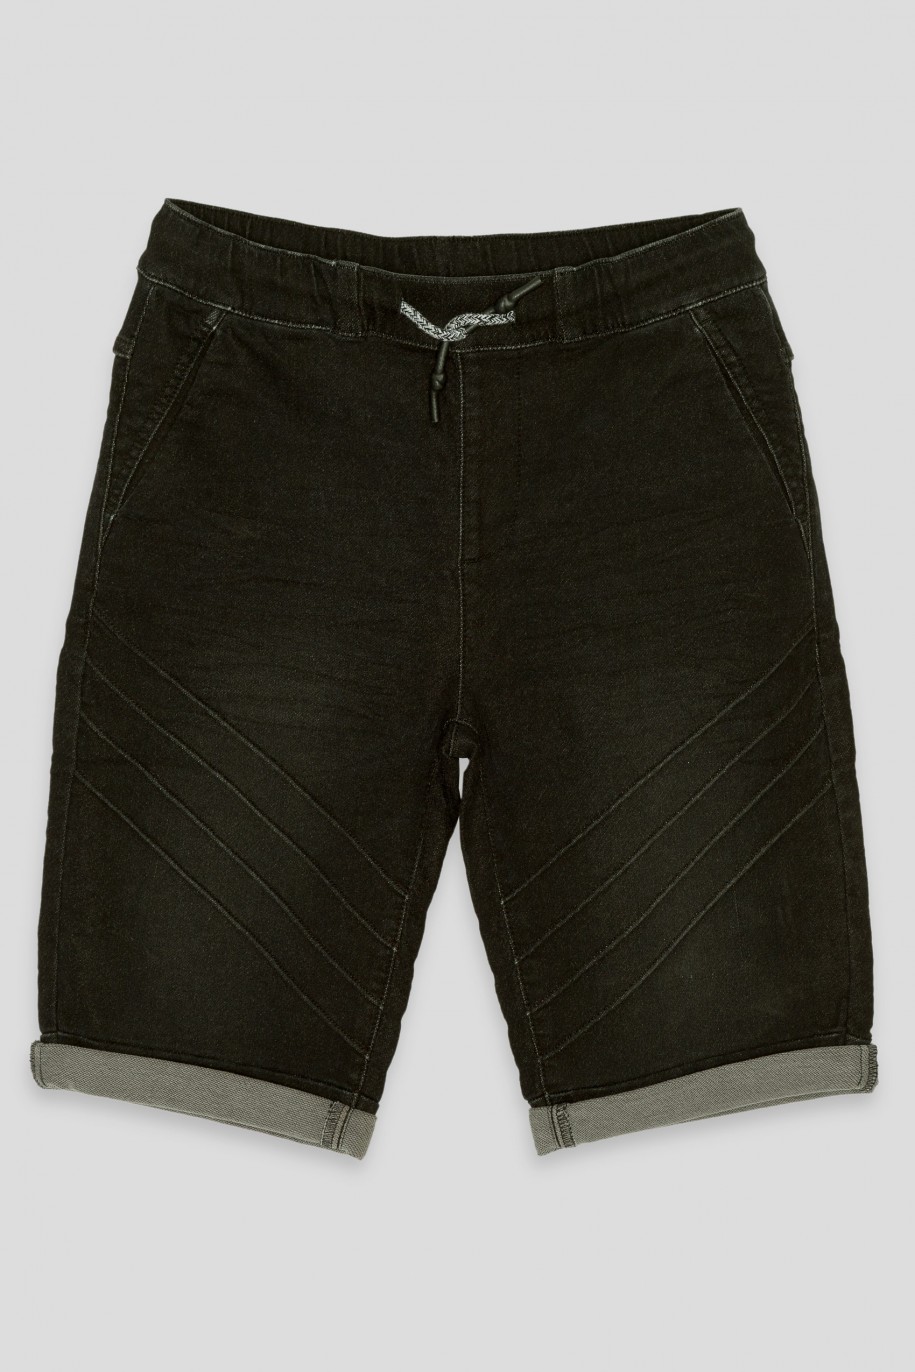 Czarne jeansowe krótkie spodenki na gumce - 42627